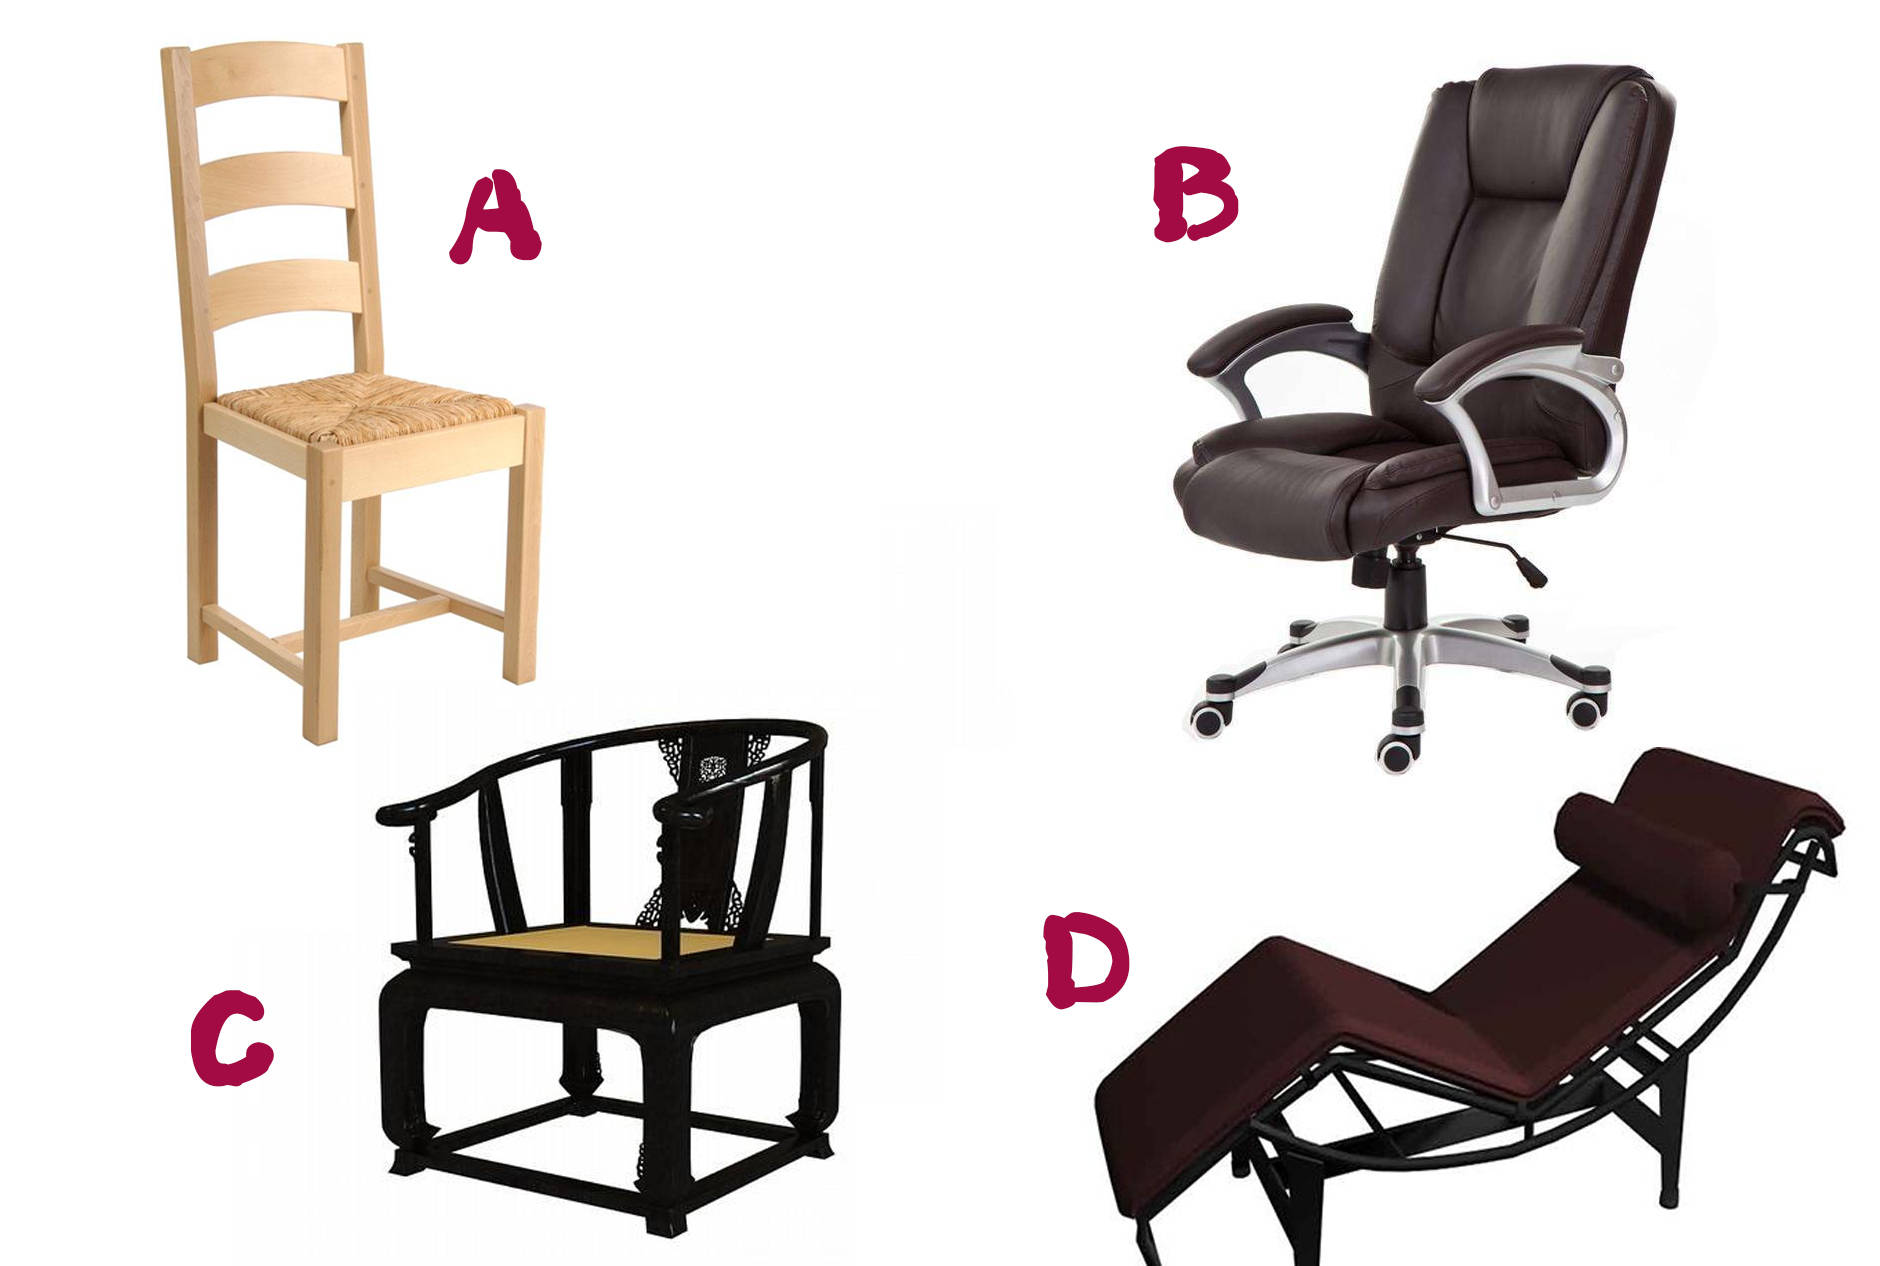 Trắc nghiệm tâm lý: Khi bước vào một căn phòng xa lạ, bạn sẽ ngồi trên chiếc ghế nào? - 1